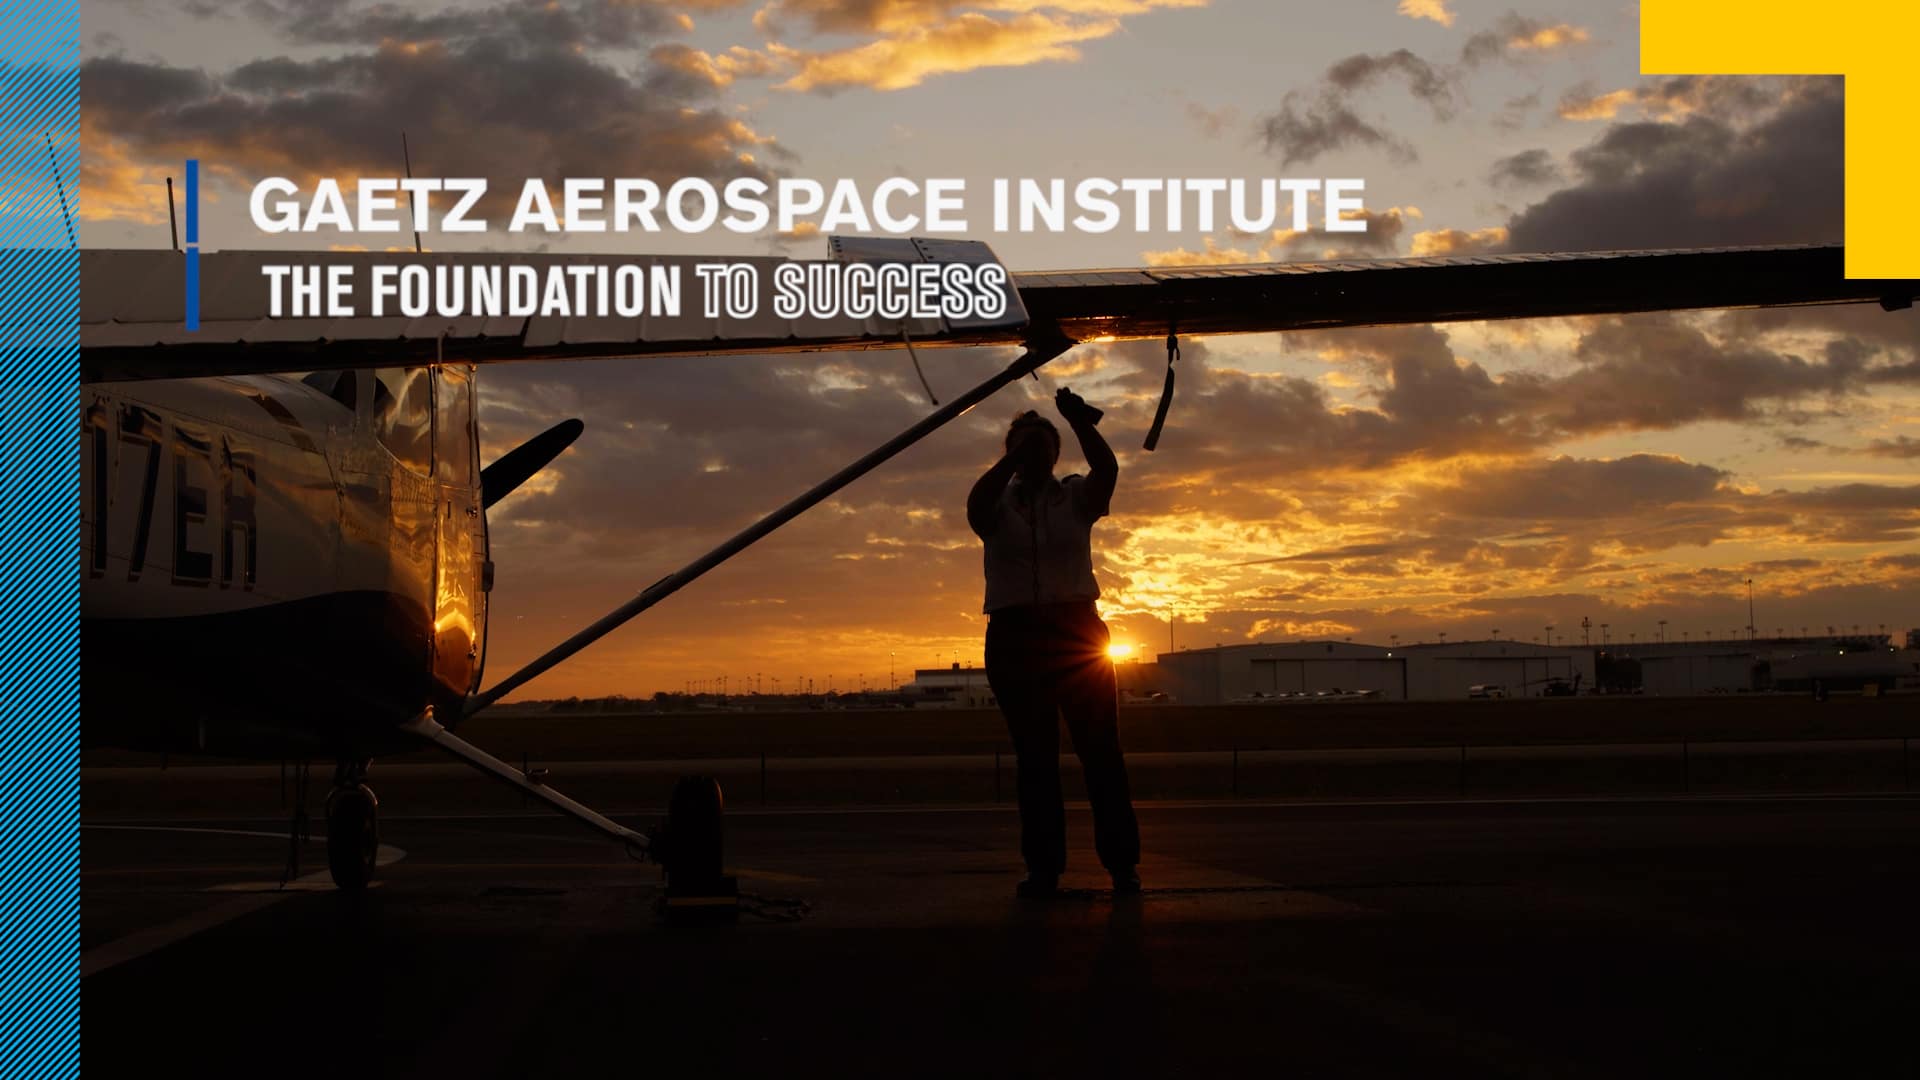 Gaetz Aerospace Institute